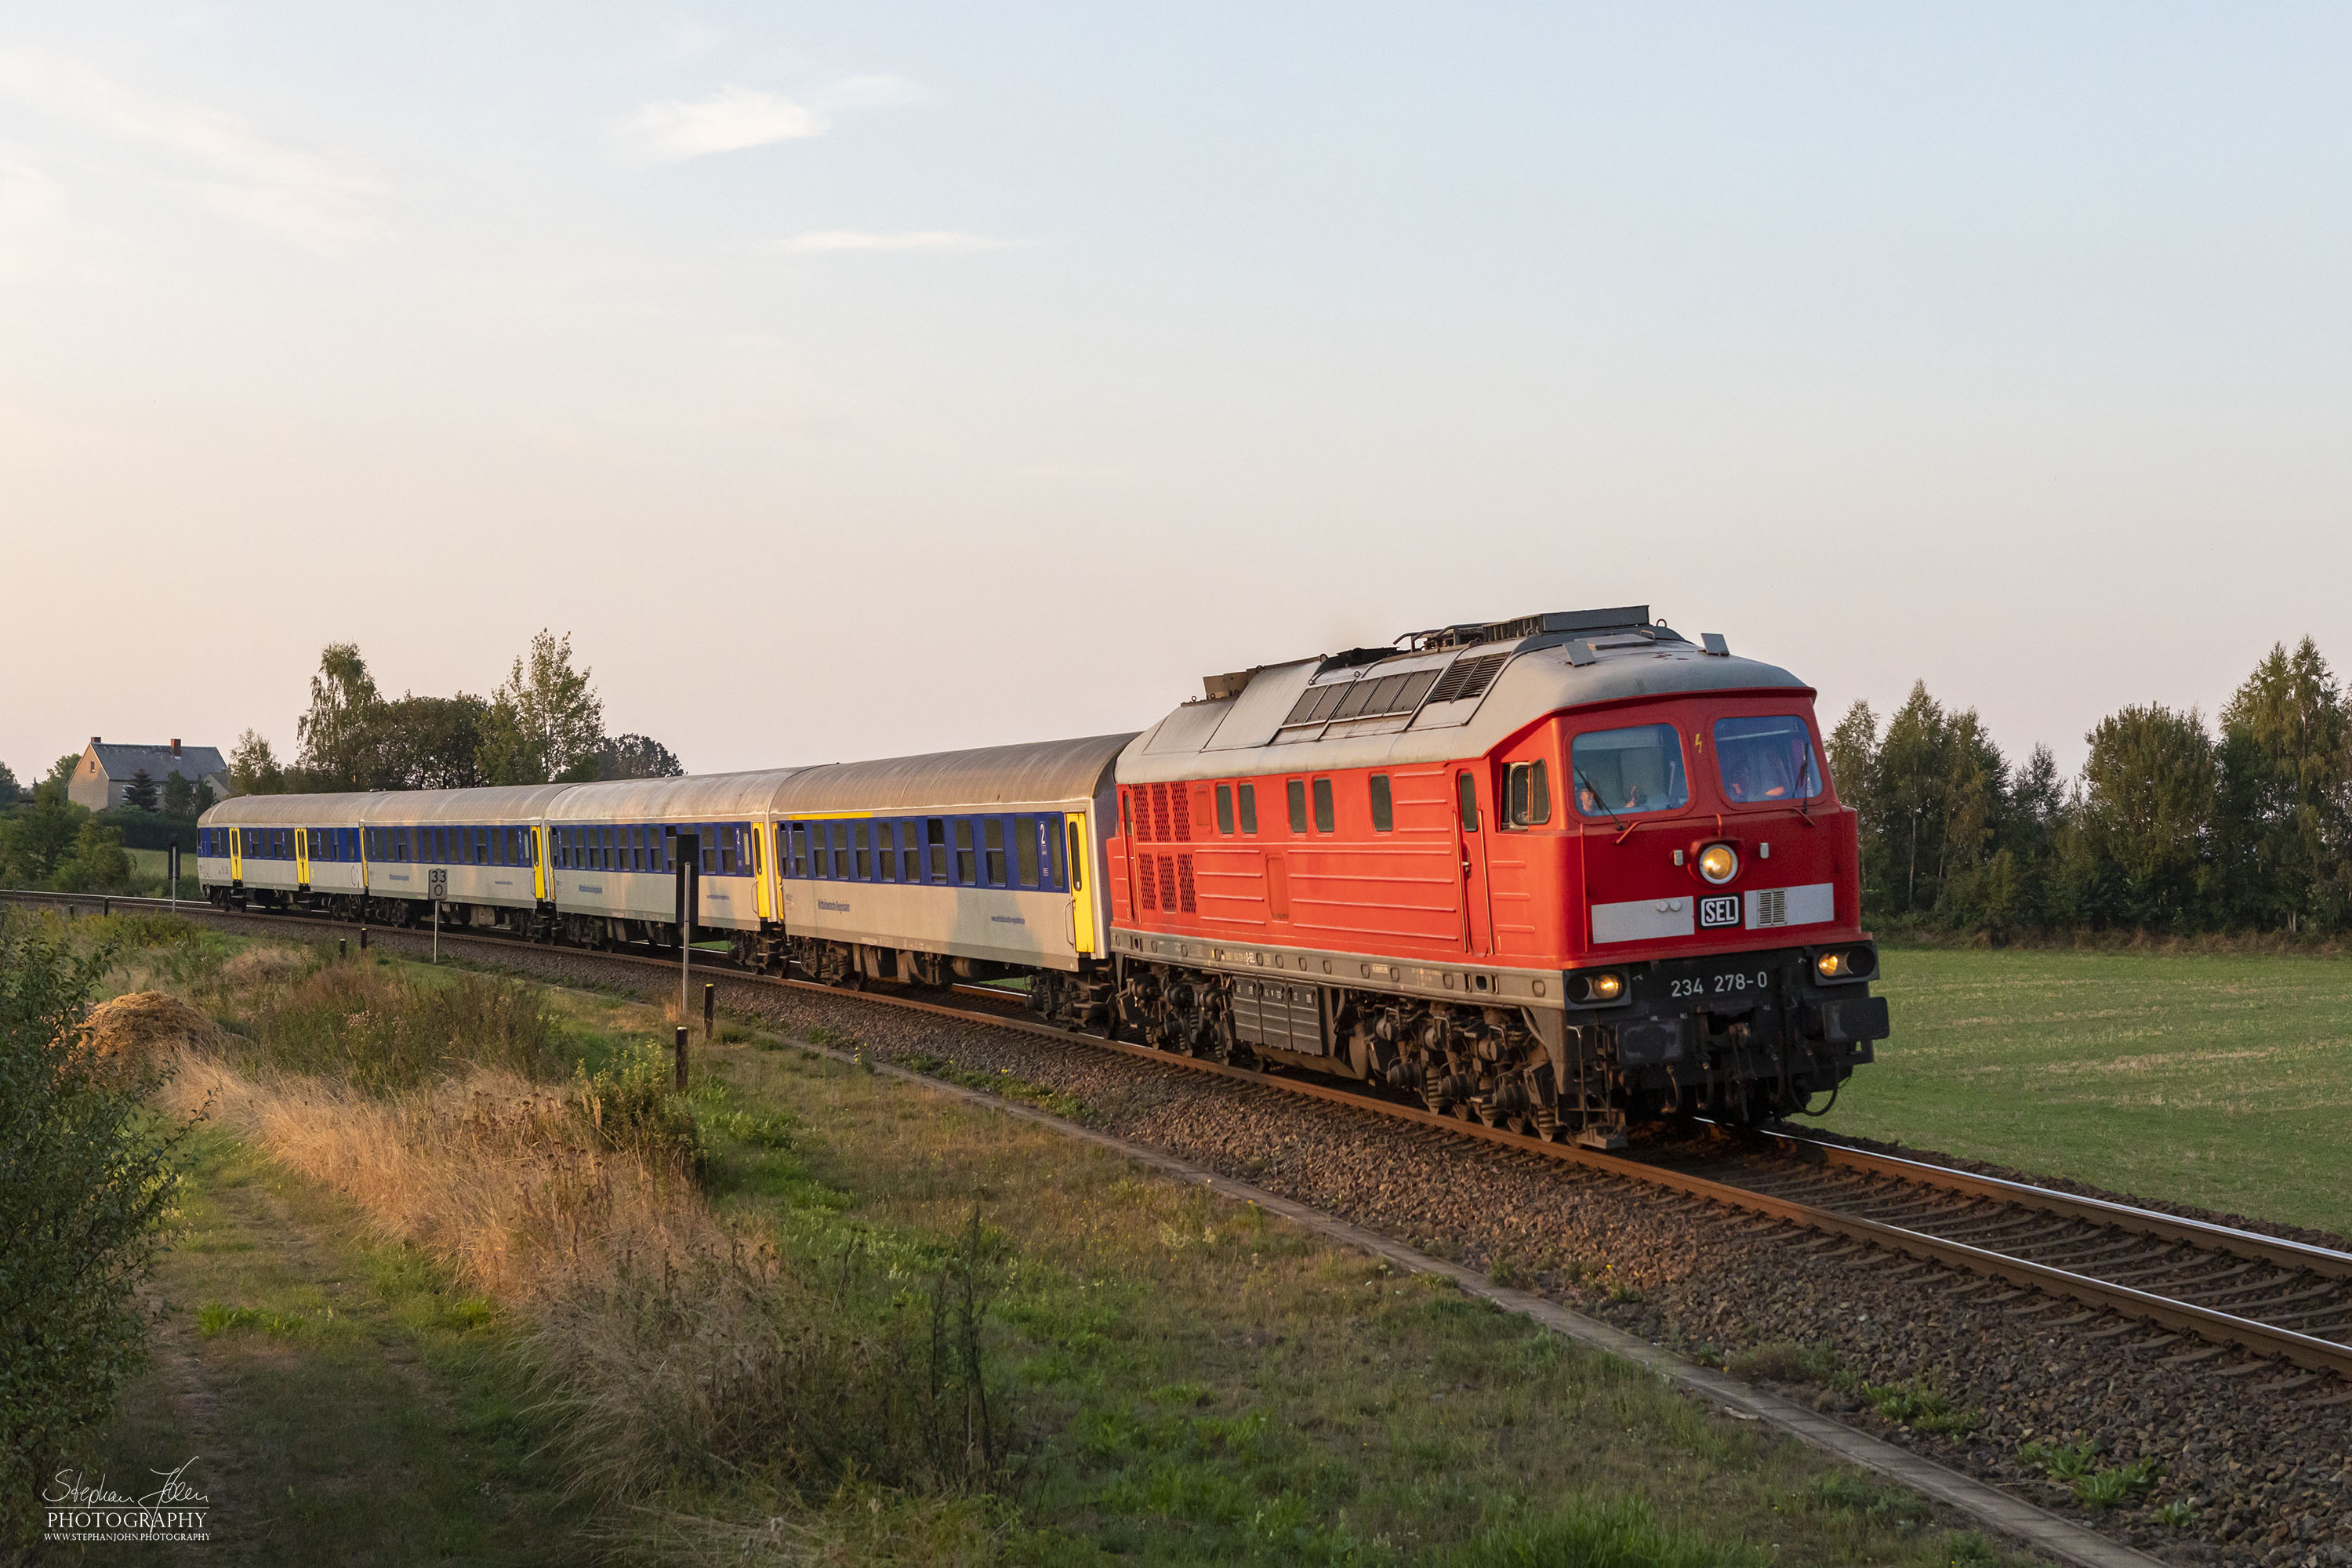 Zug 27755 der MRB von Chemnitz nach Leipzig. Wegen Bauarbeiten beginnt der Zug in Chemnitz-Küchwald. Bespannt ist der Zug mit Lok 234 278-0 der SEL, da die Planlok nicht verfügbar ist.